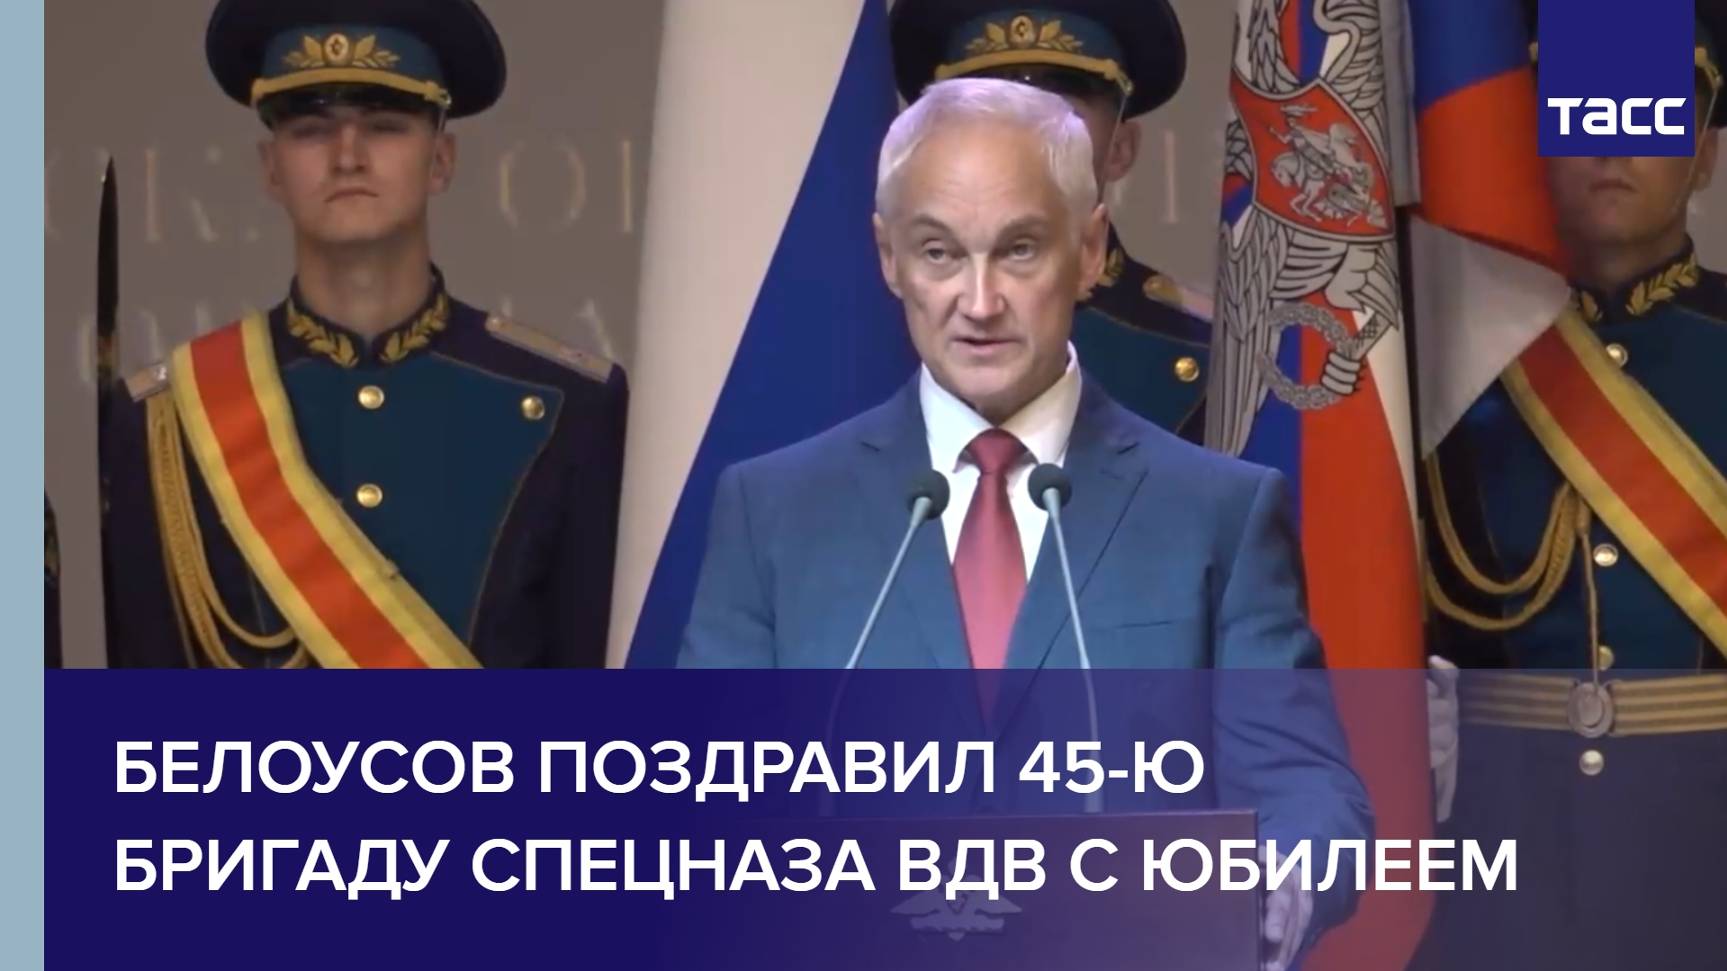 Белоусов поздравил 45-ю бригаду спецназа ВДВ с юбилеем